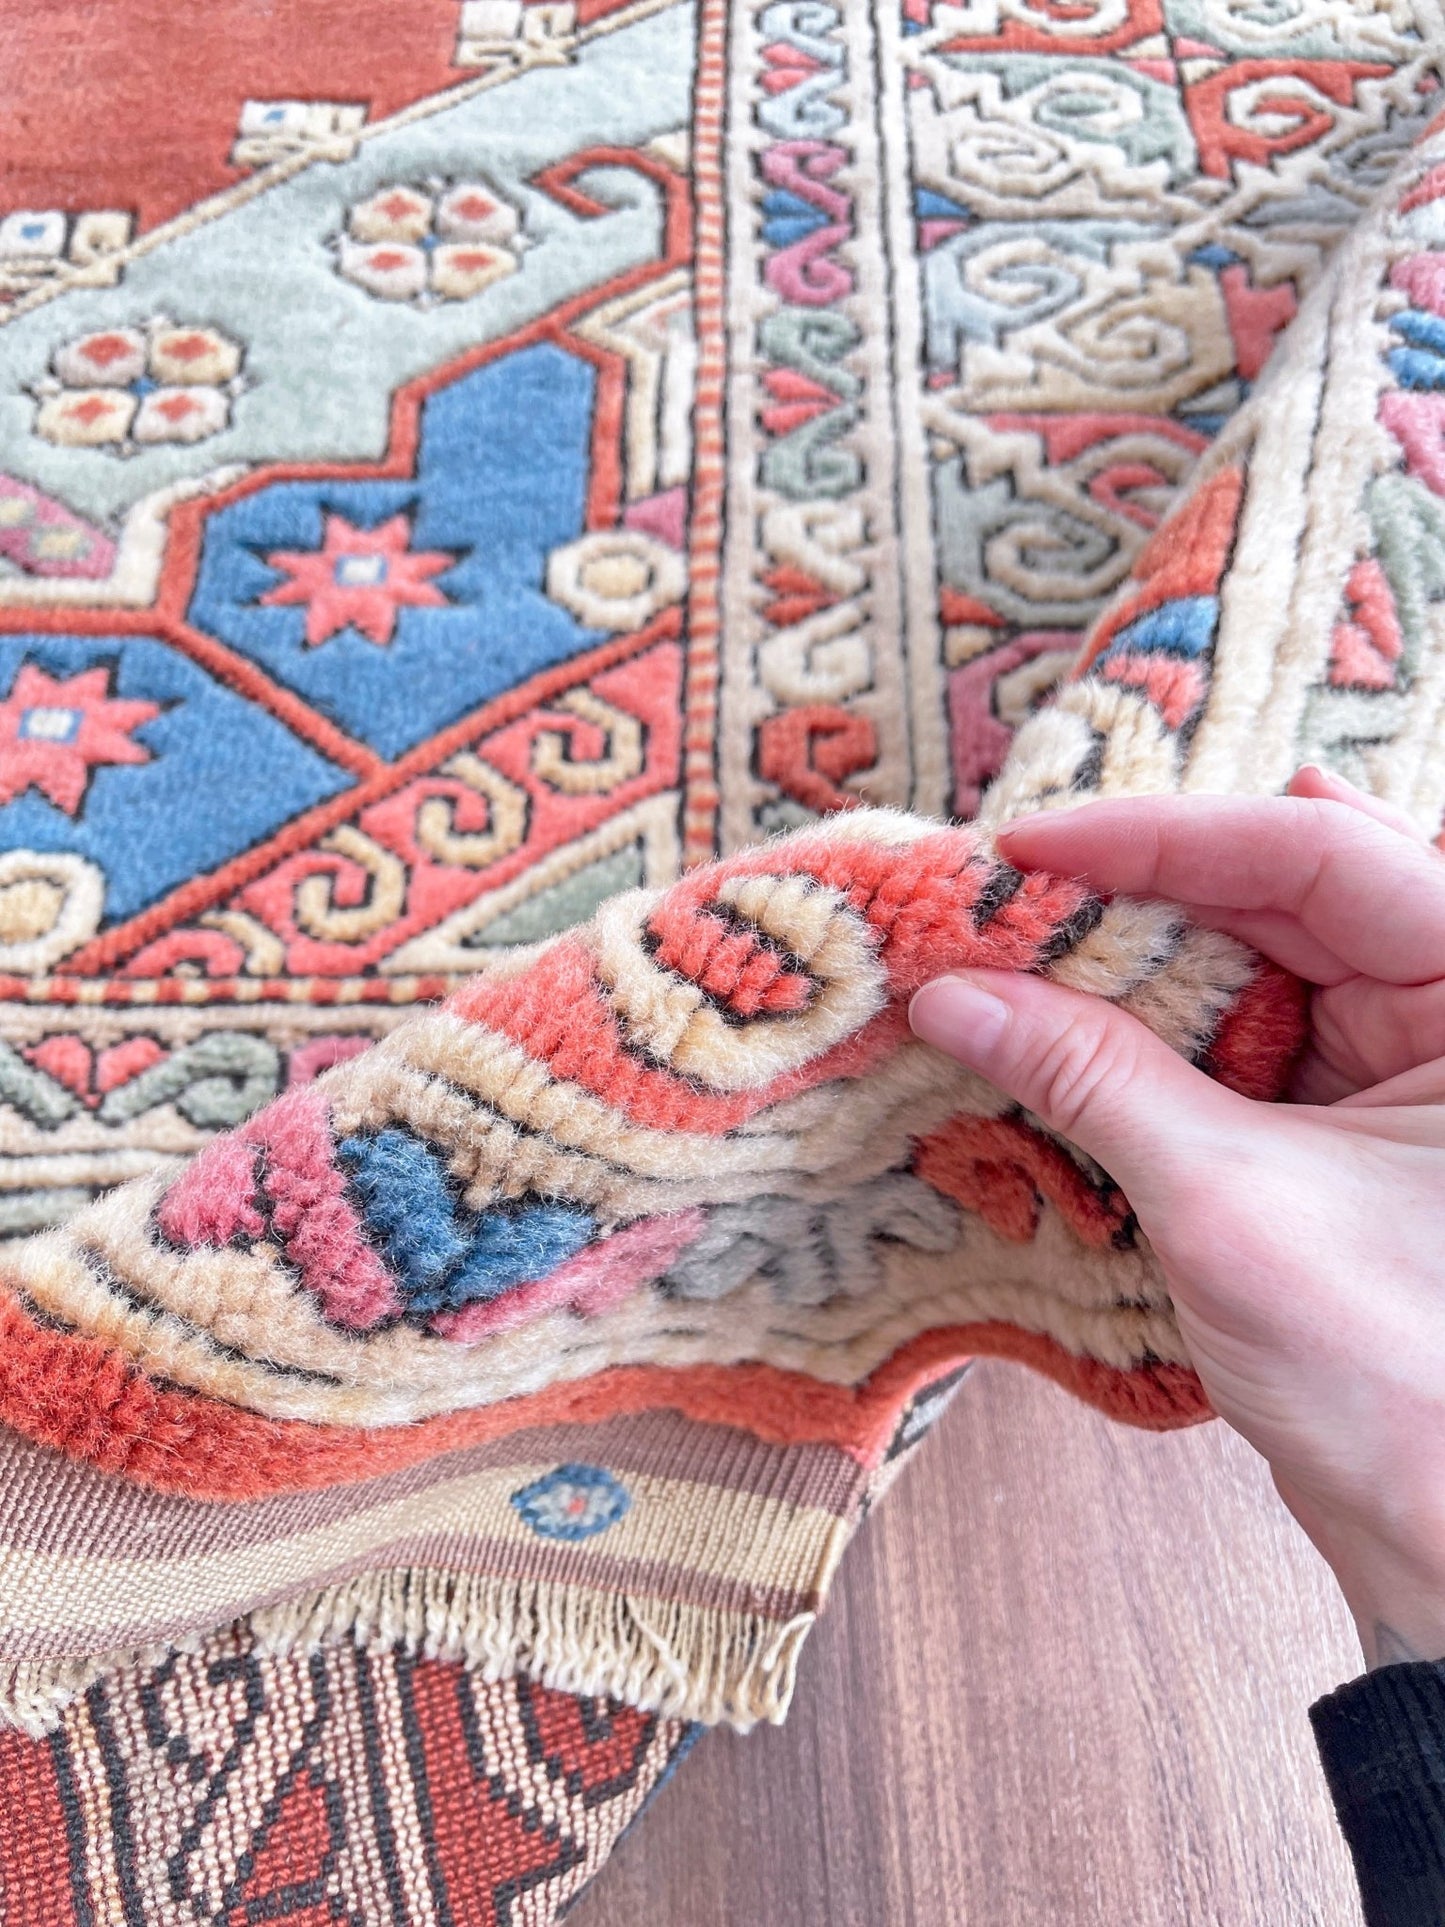 Vintage vibrant turkish rug for living room bedroom dining office. rug shop San Francisco Bay Area. Buy rug online